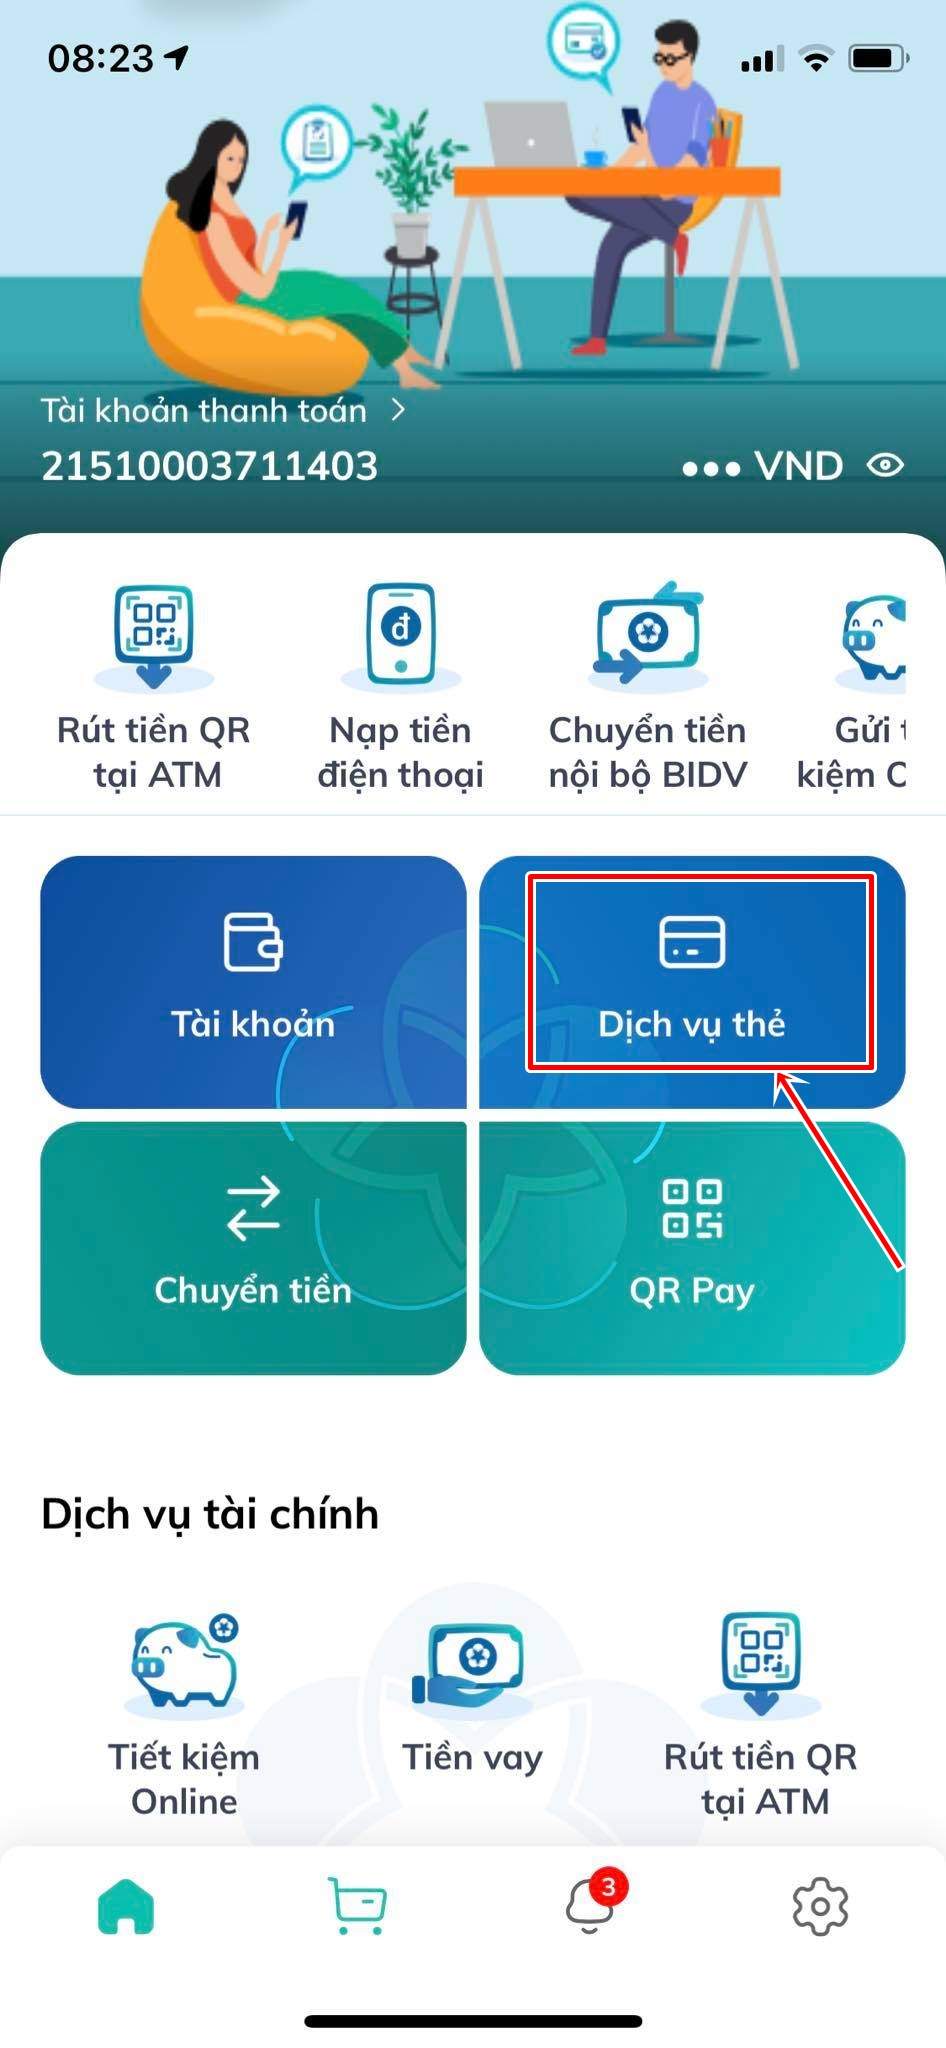 Chọn tính năng dịch vụ thẻ trên app BIDV 